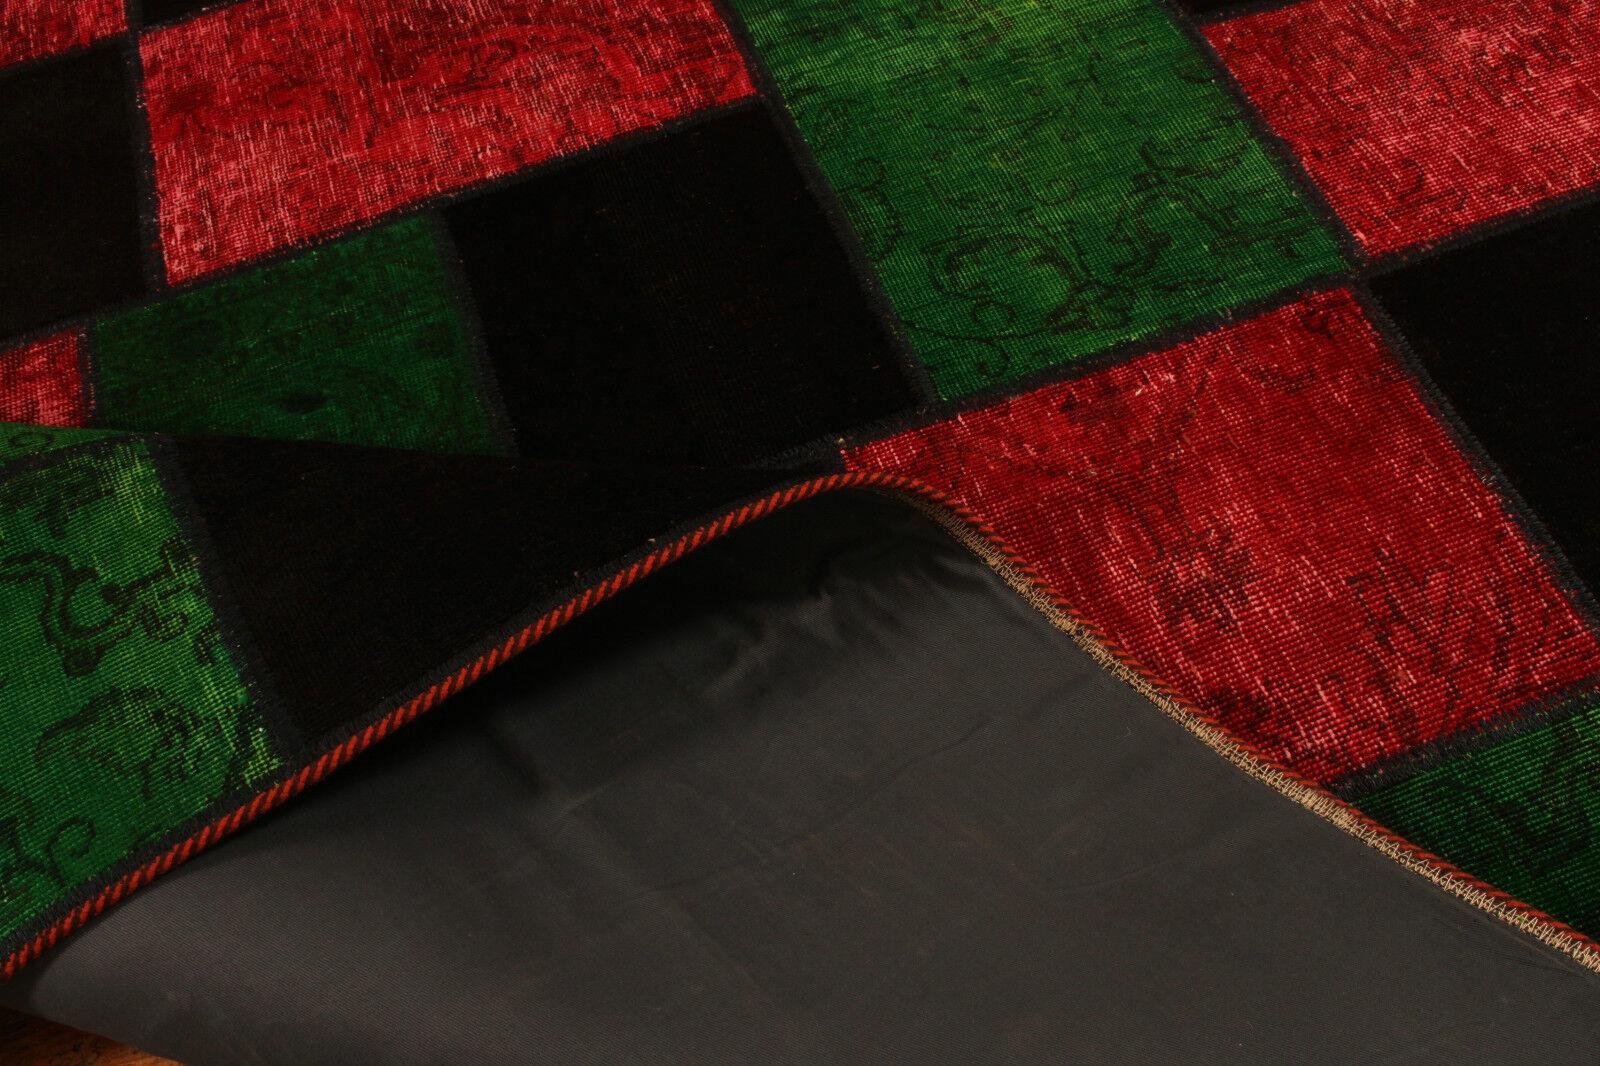 Handgefertigter Vintage Persian Style Patchwork Overdyed Teppich 5' x 6.7' (175cm x 242cm)

Tauchen Sie ein in den eklektischen Charme unseres handgefertigten Patchwork-Teppichs im persischen Vintage-Stil mit Färbung. Dieser aus den 1970er Jahren